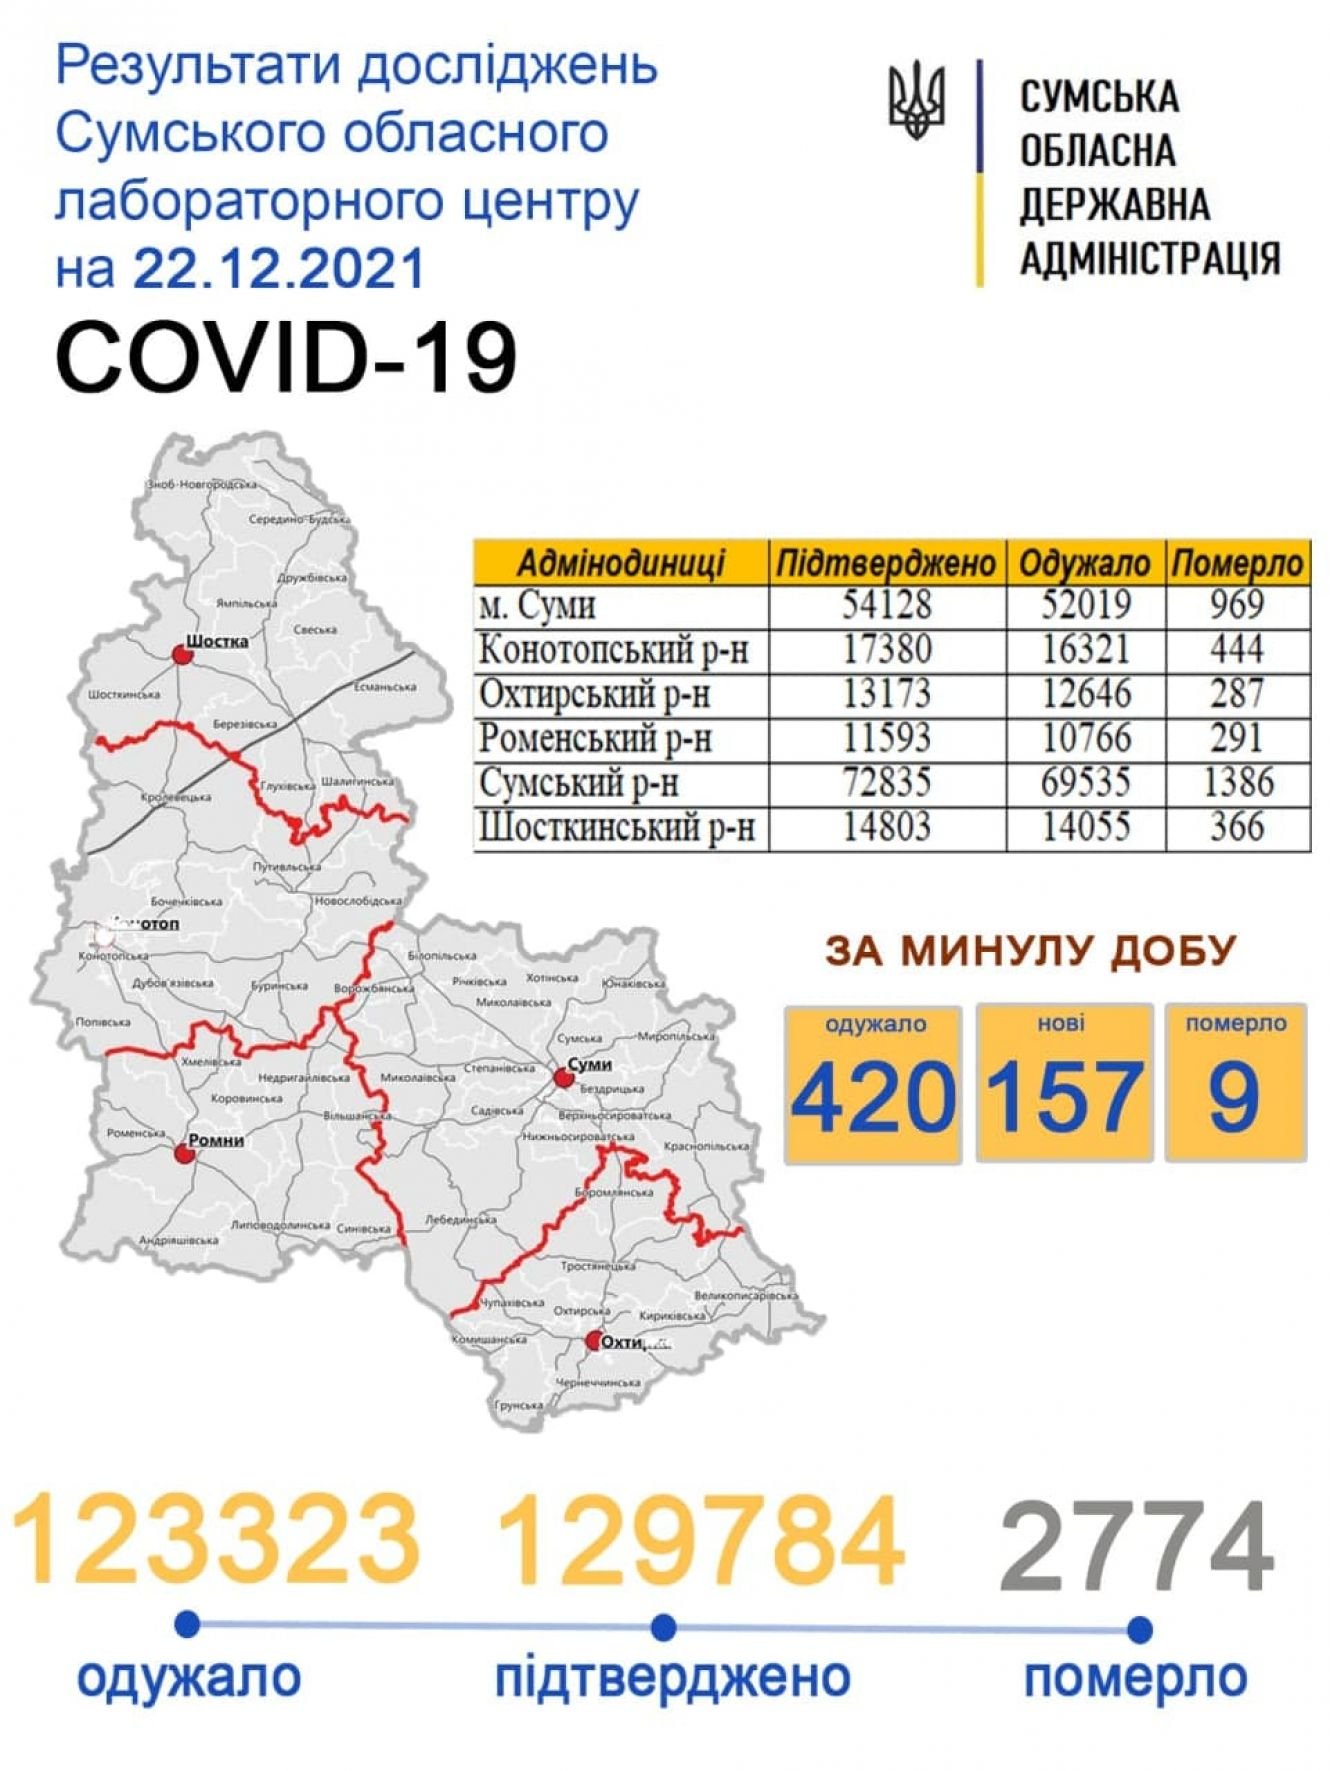     covid-19  157 